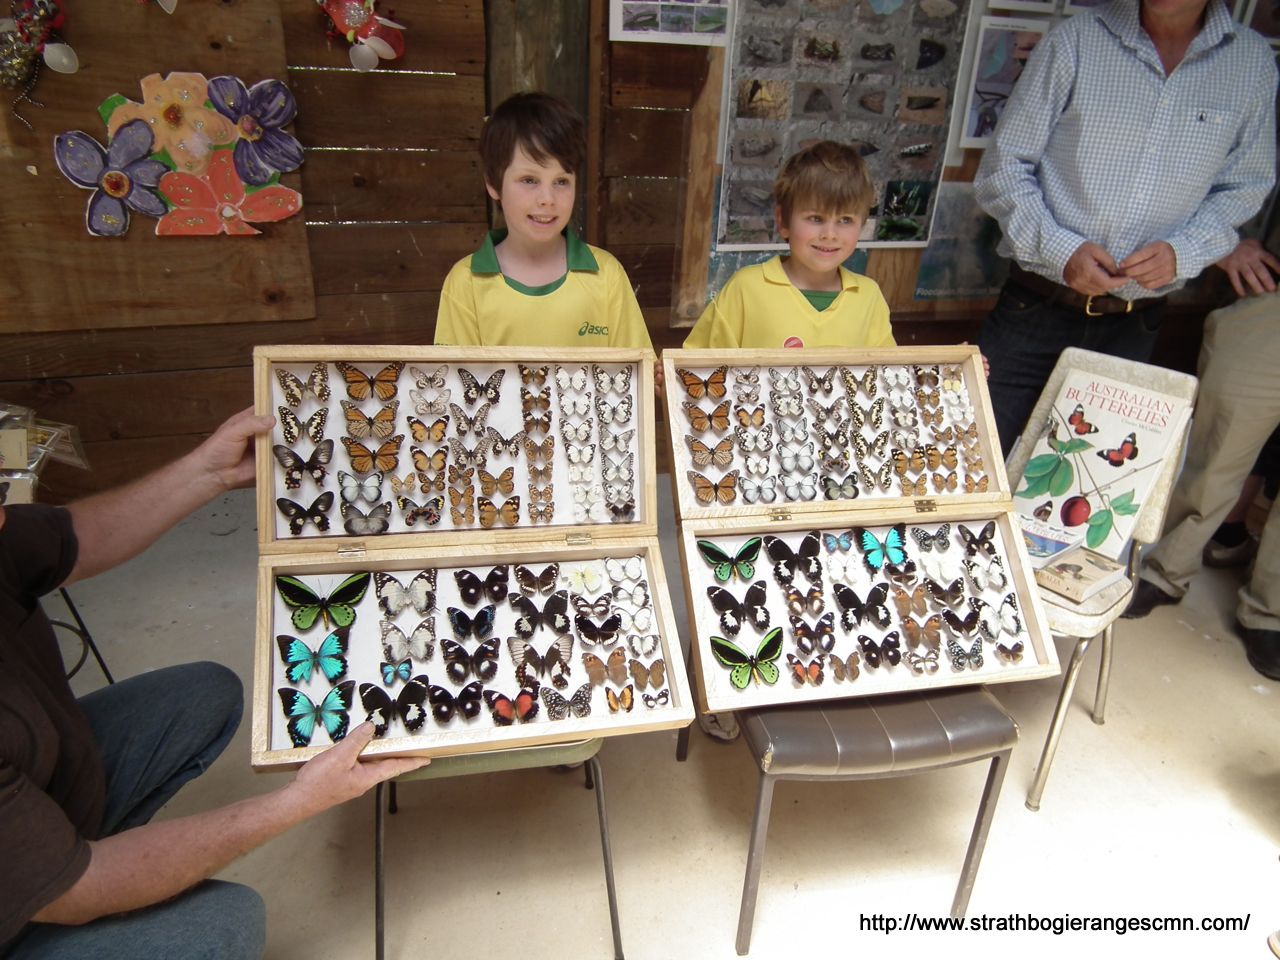 2013 Butterfly Festival – Euroa Arboretum